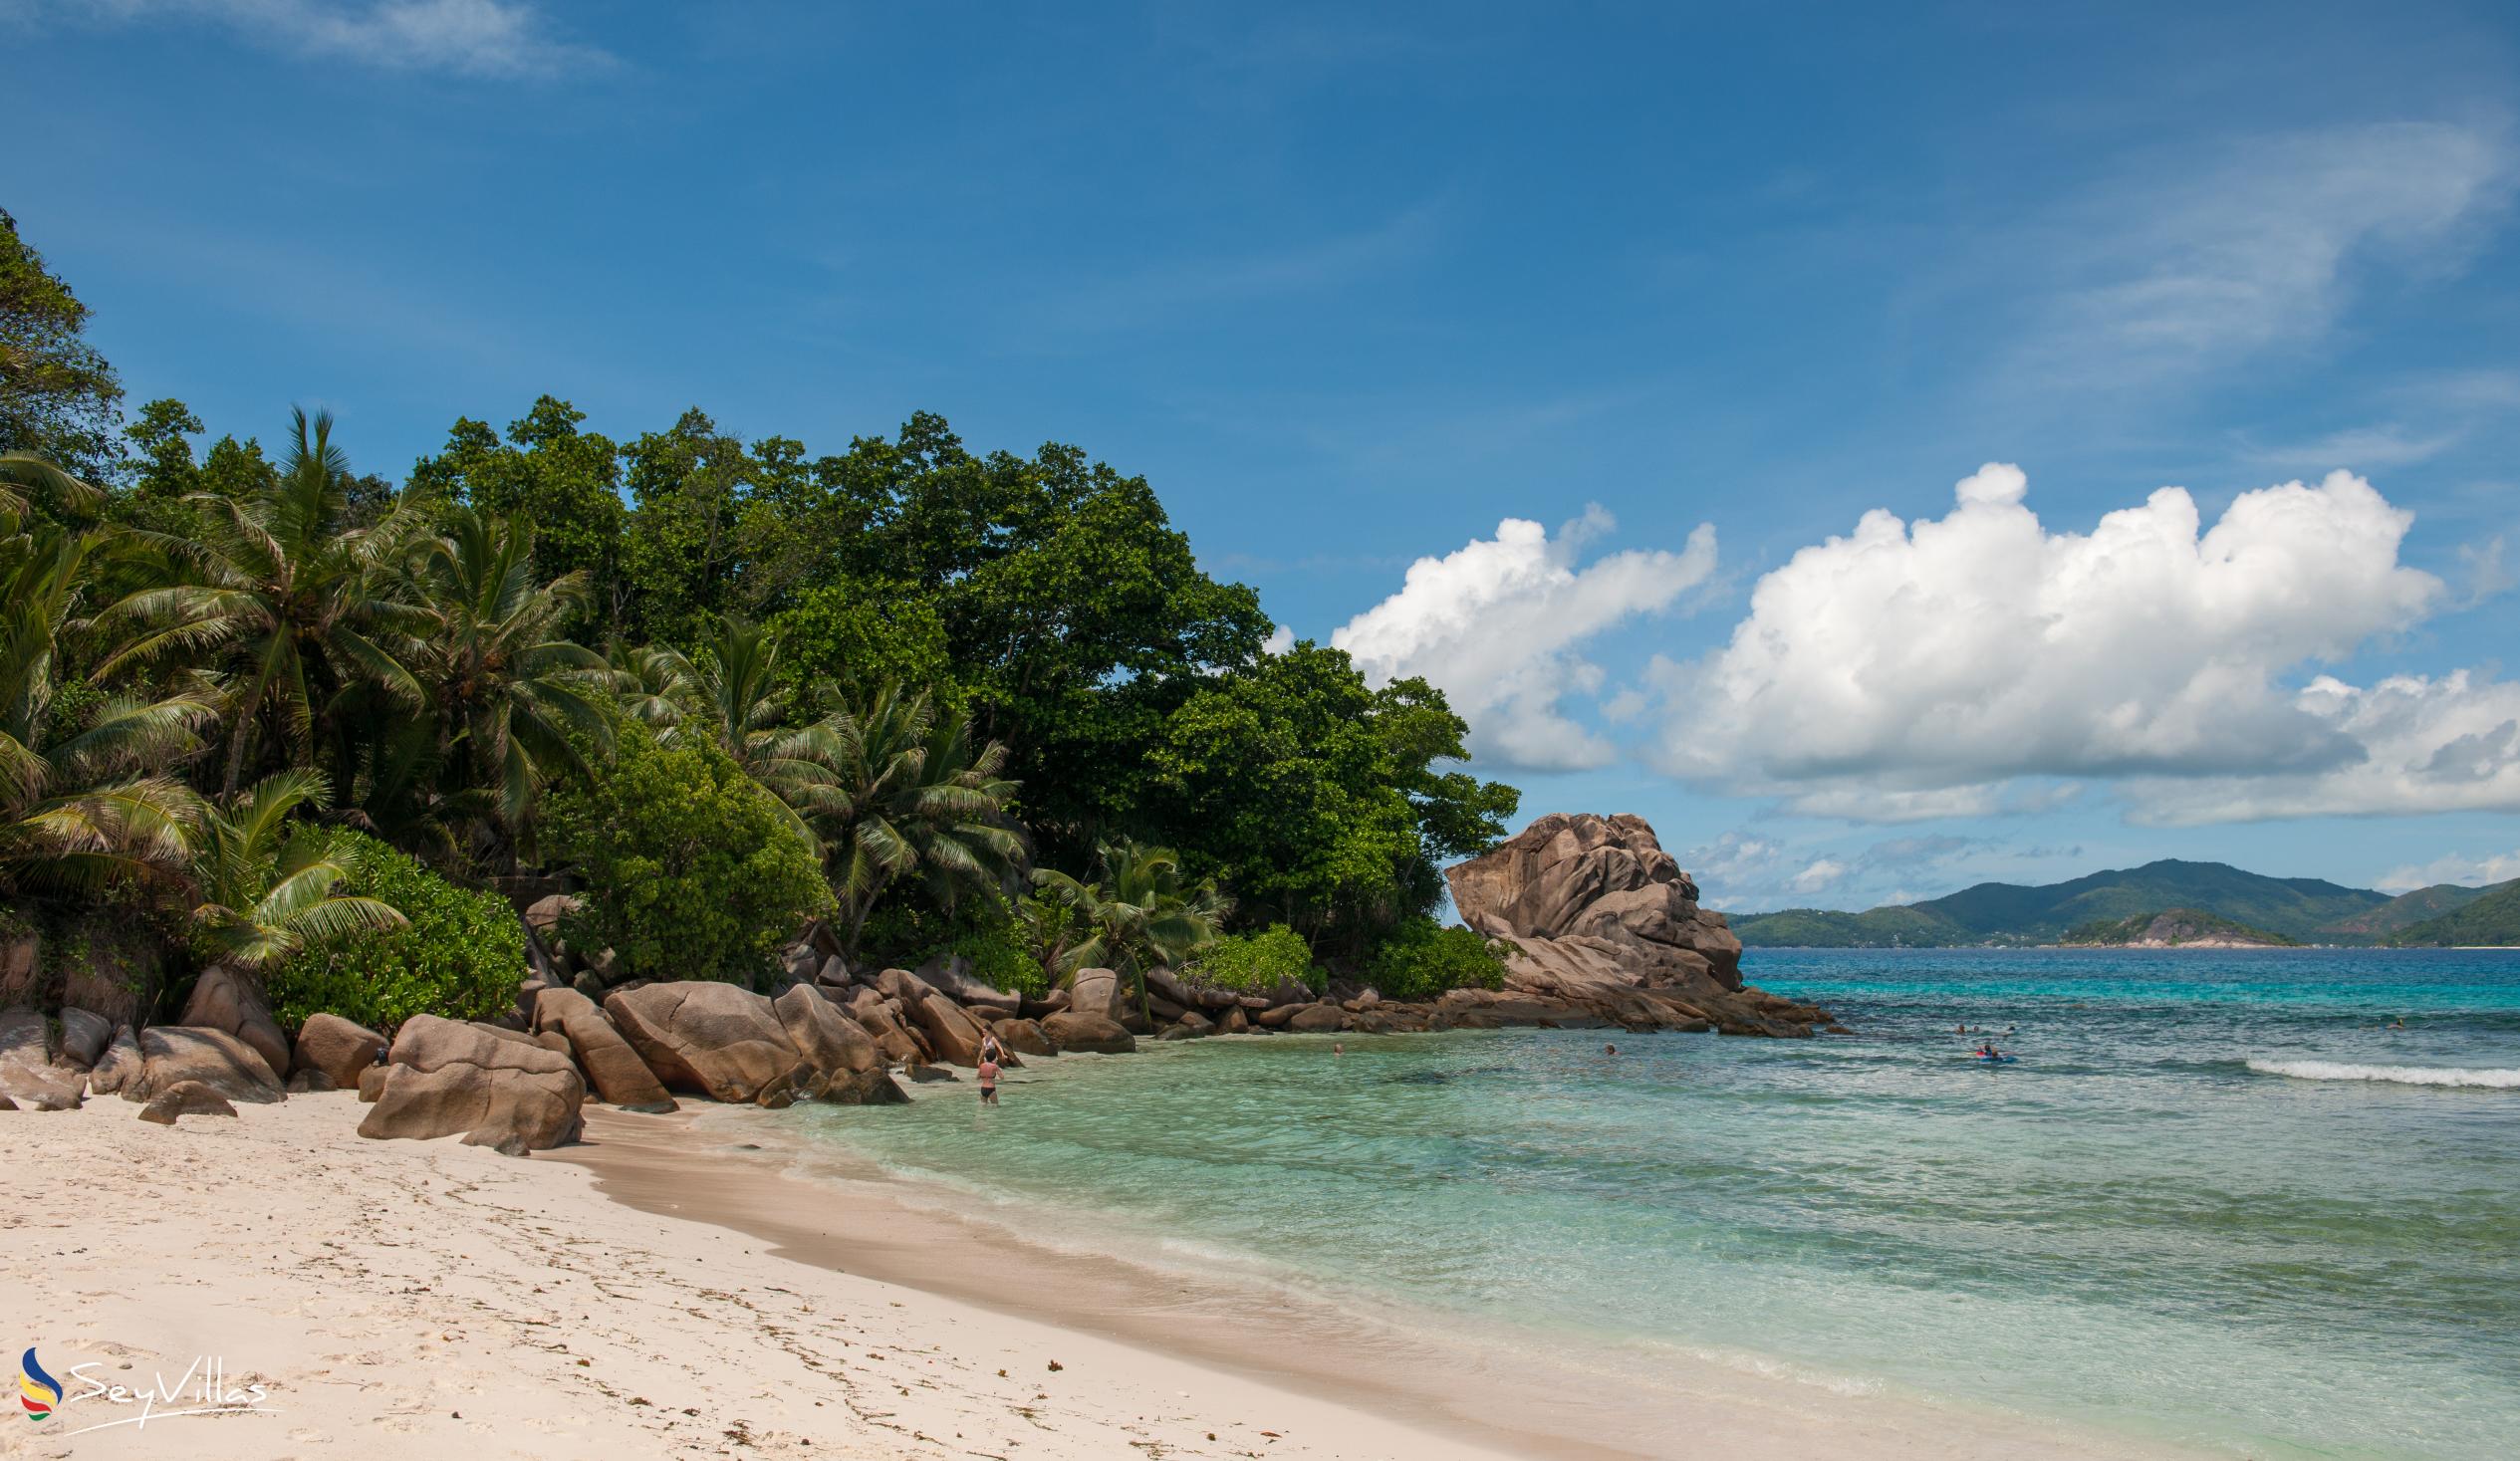 Foto 27: Anse Severe Beach Villa - Posizione - La Digue (Seychelles)